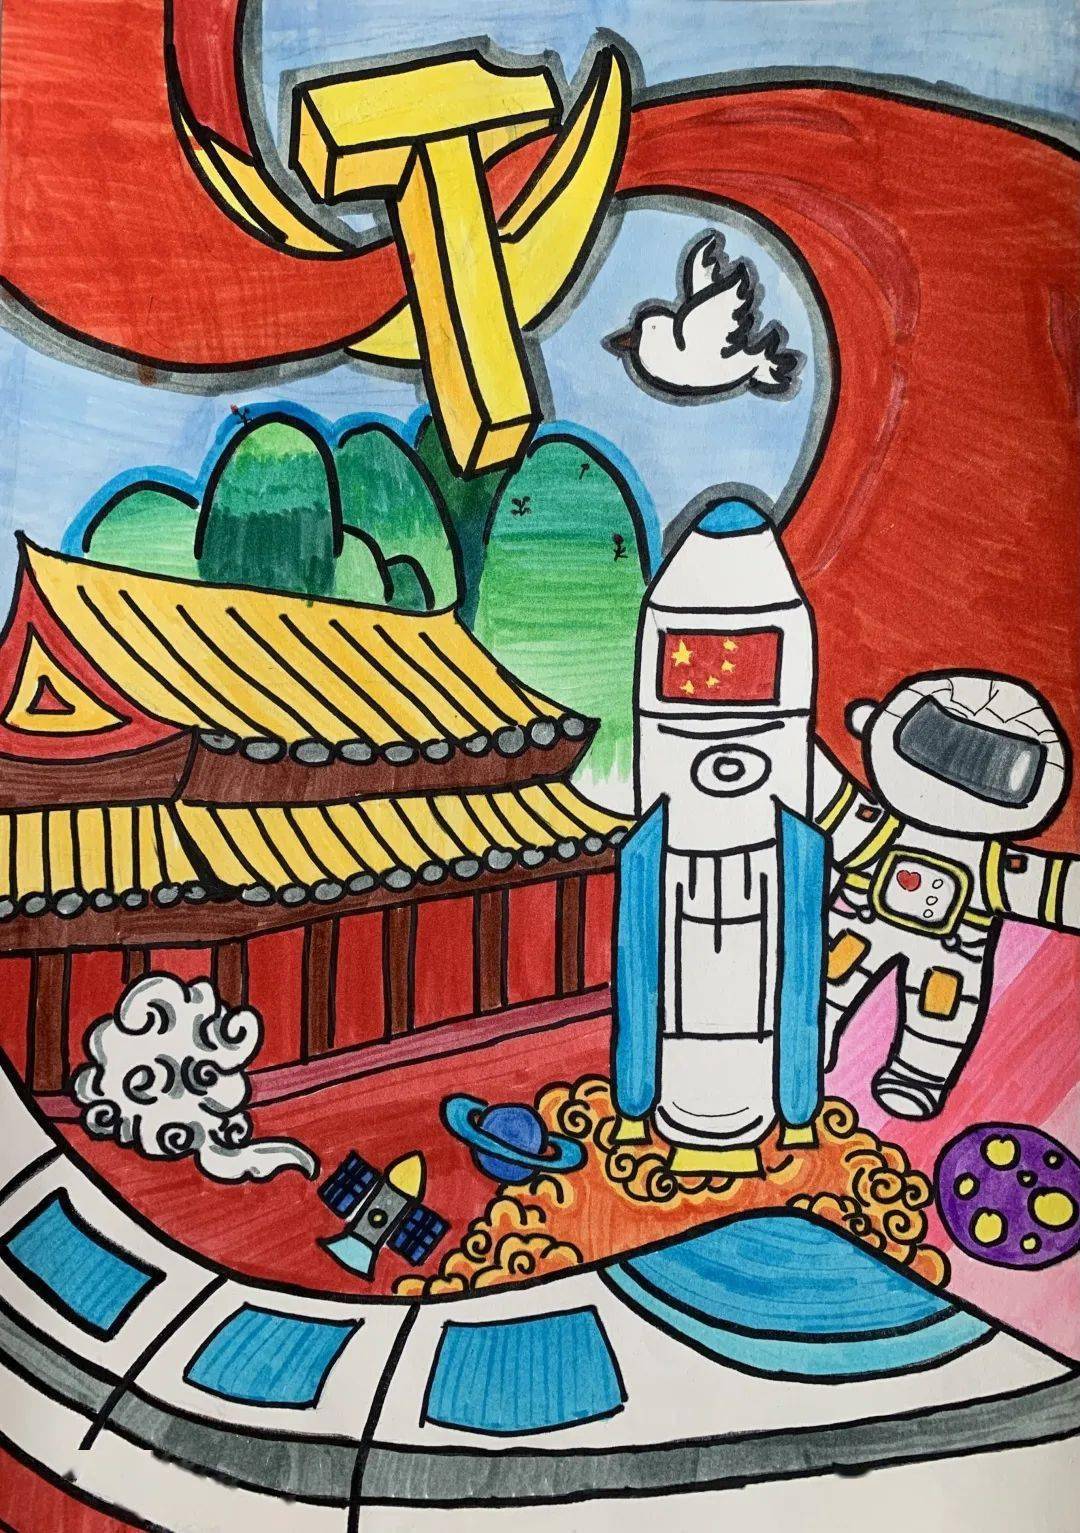 11岁 曹睿婕绘画《我和我的祖国》 12岁 李维瑄绘画《未来中国》 梁